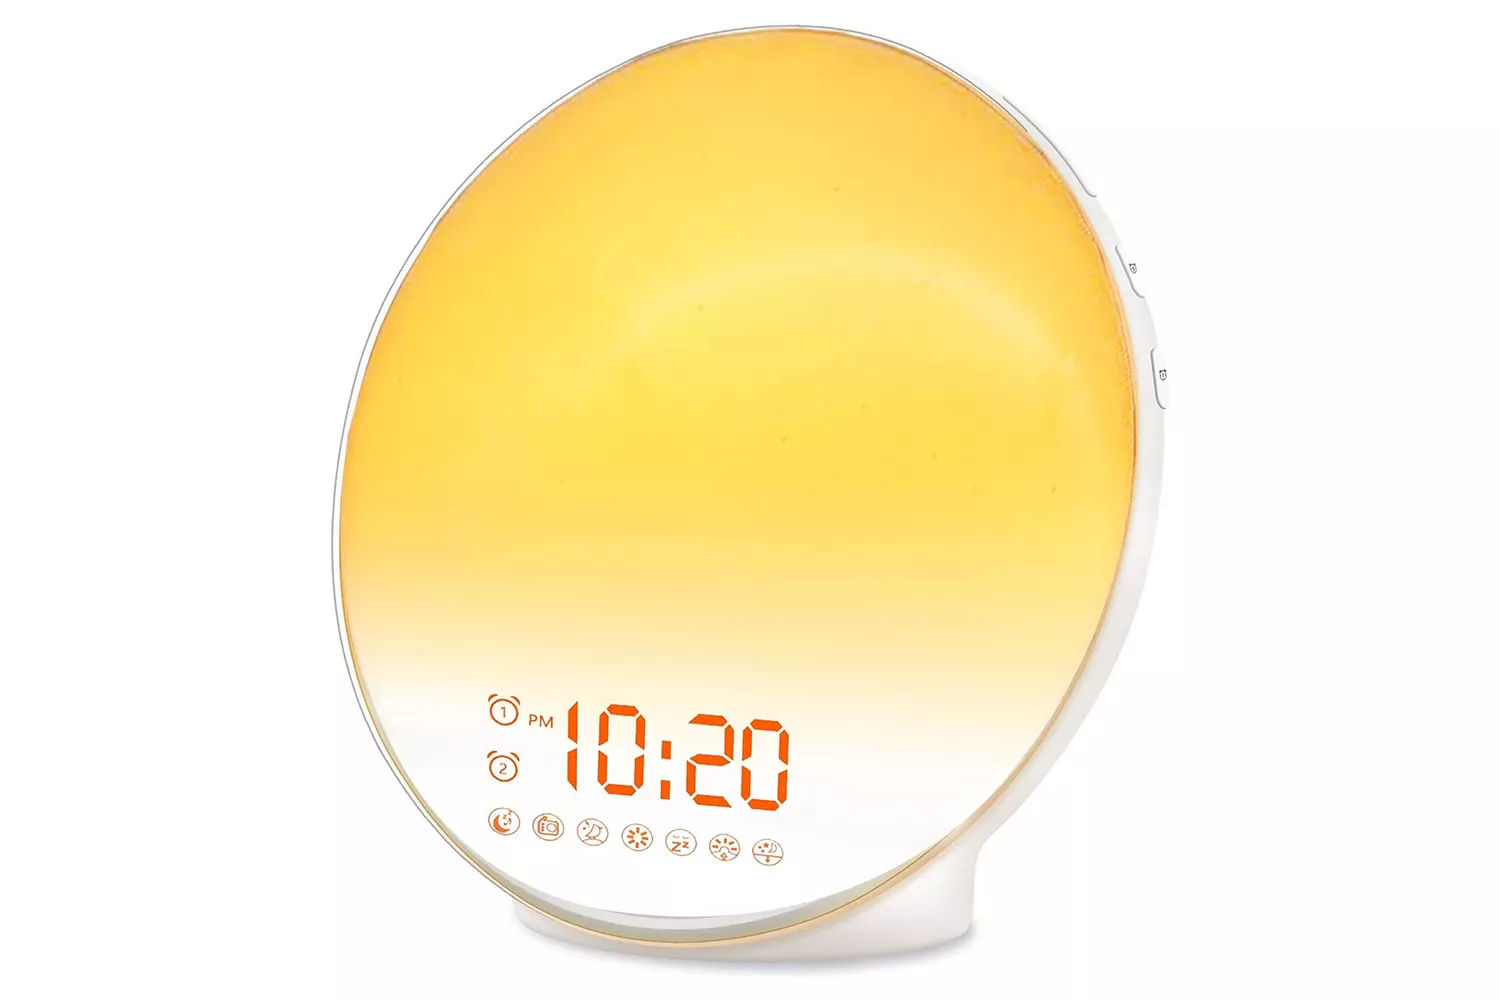 JALL Wake Up Light Sunrise Alarm Clock at Amazon